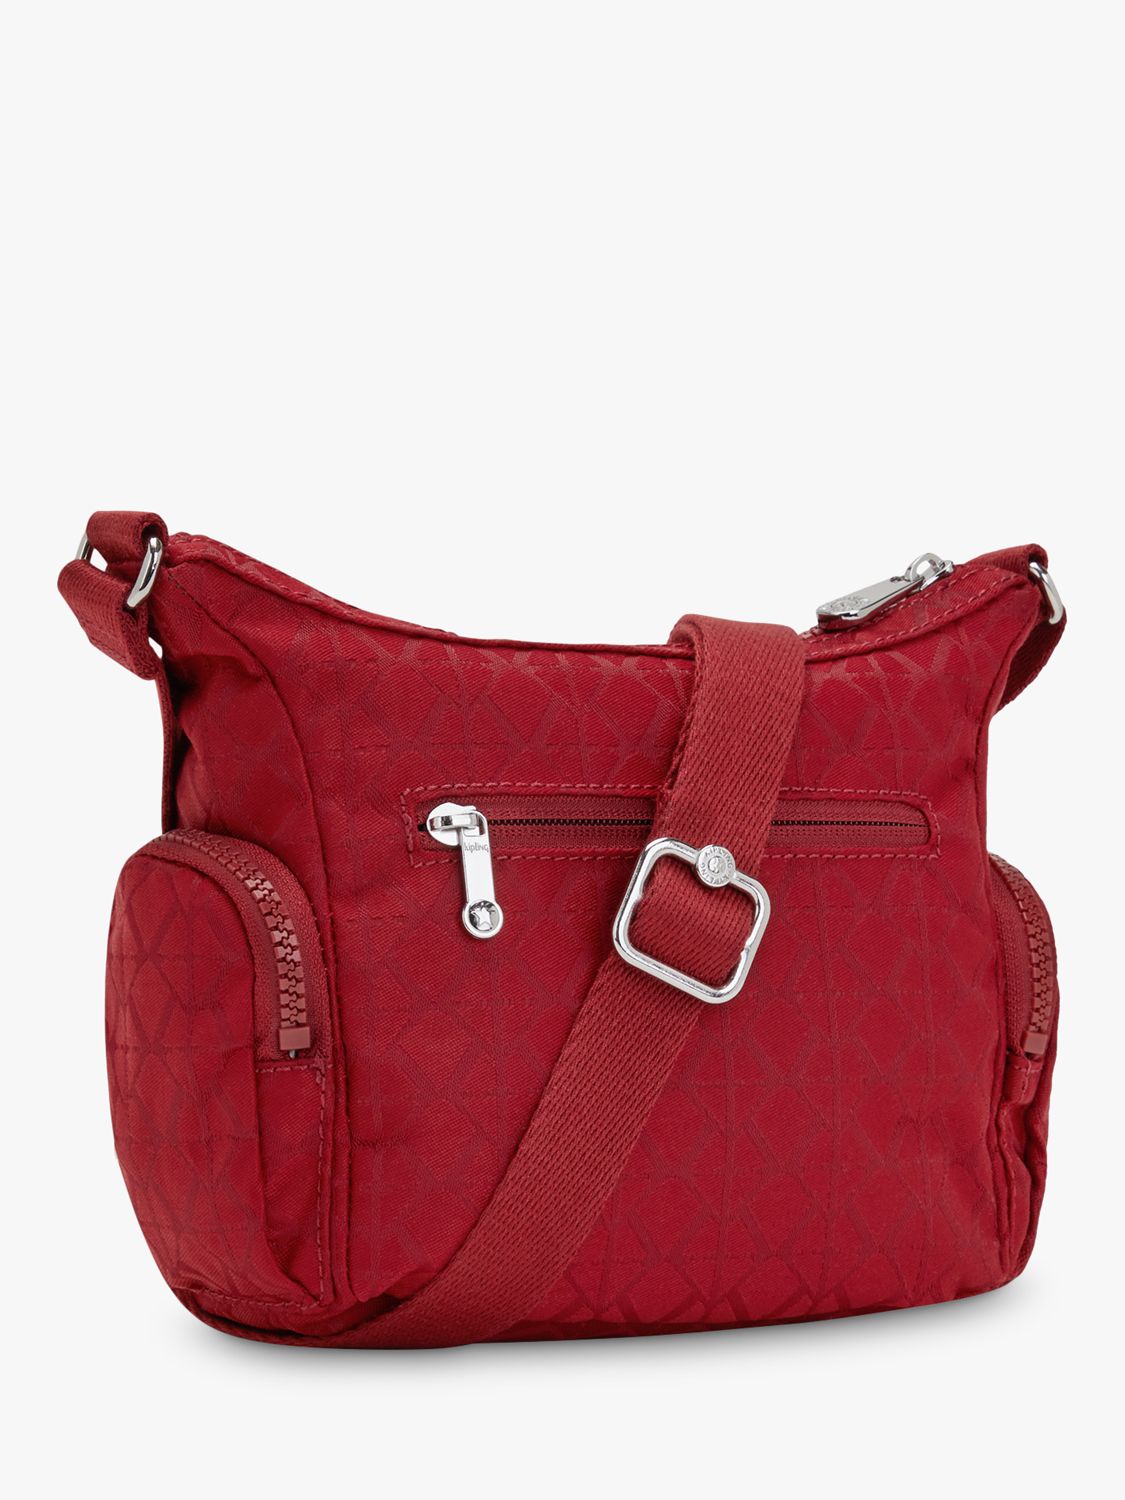 Kipling Gabbie Mini Shoulder Bag, Signature Red at John Lewis & Partners